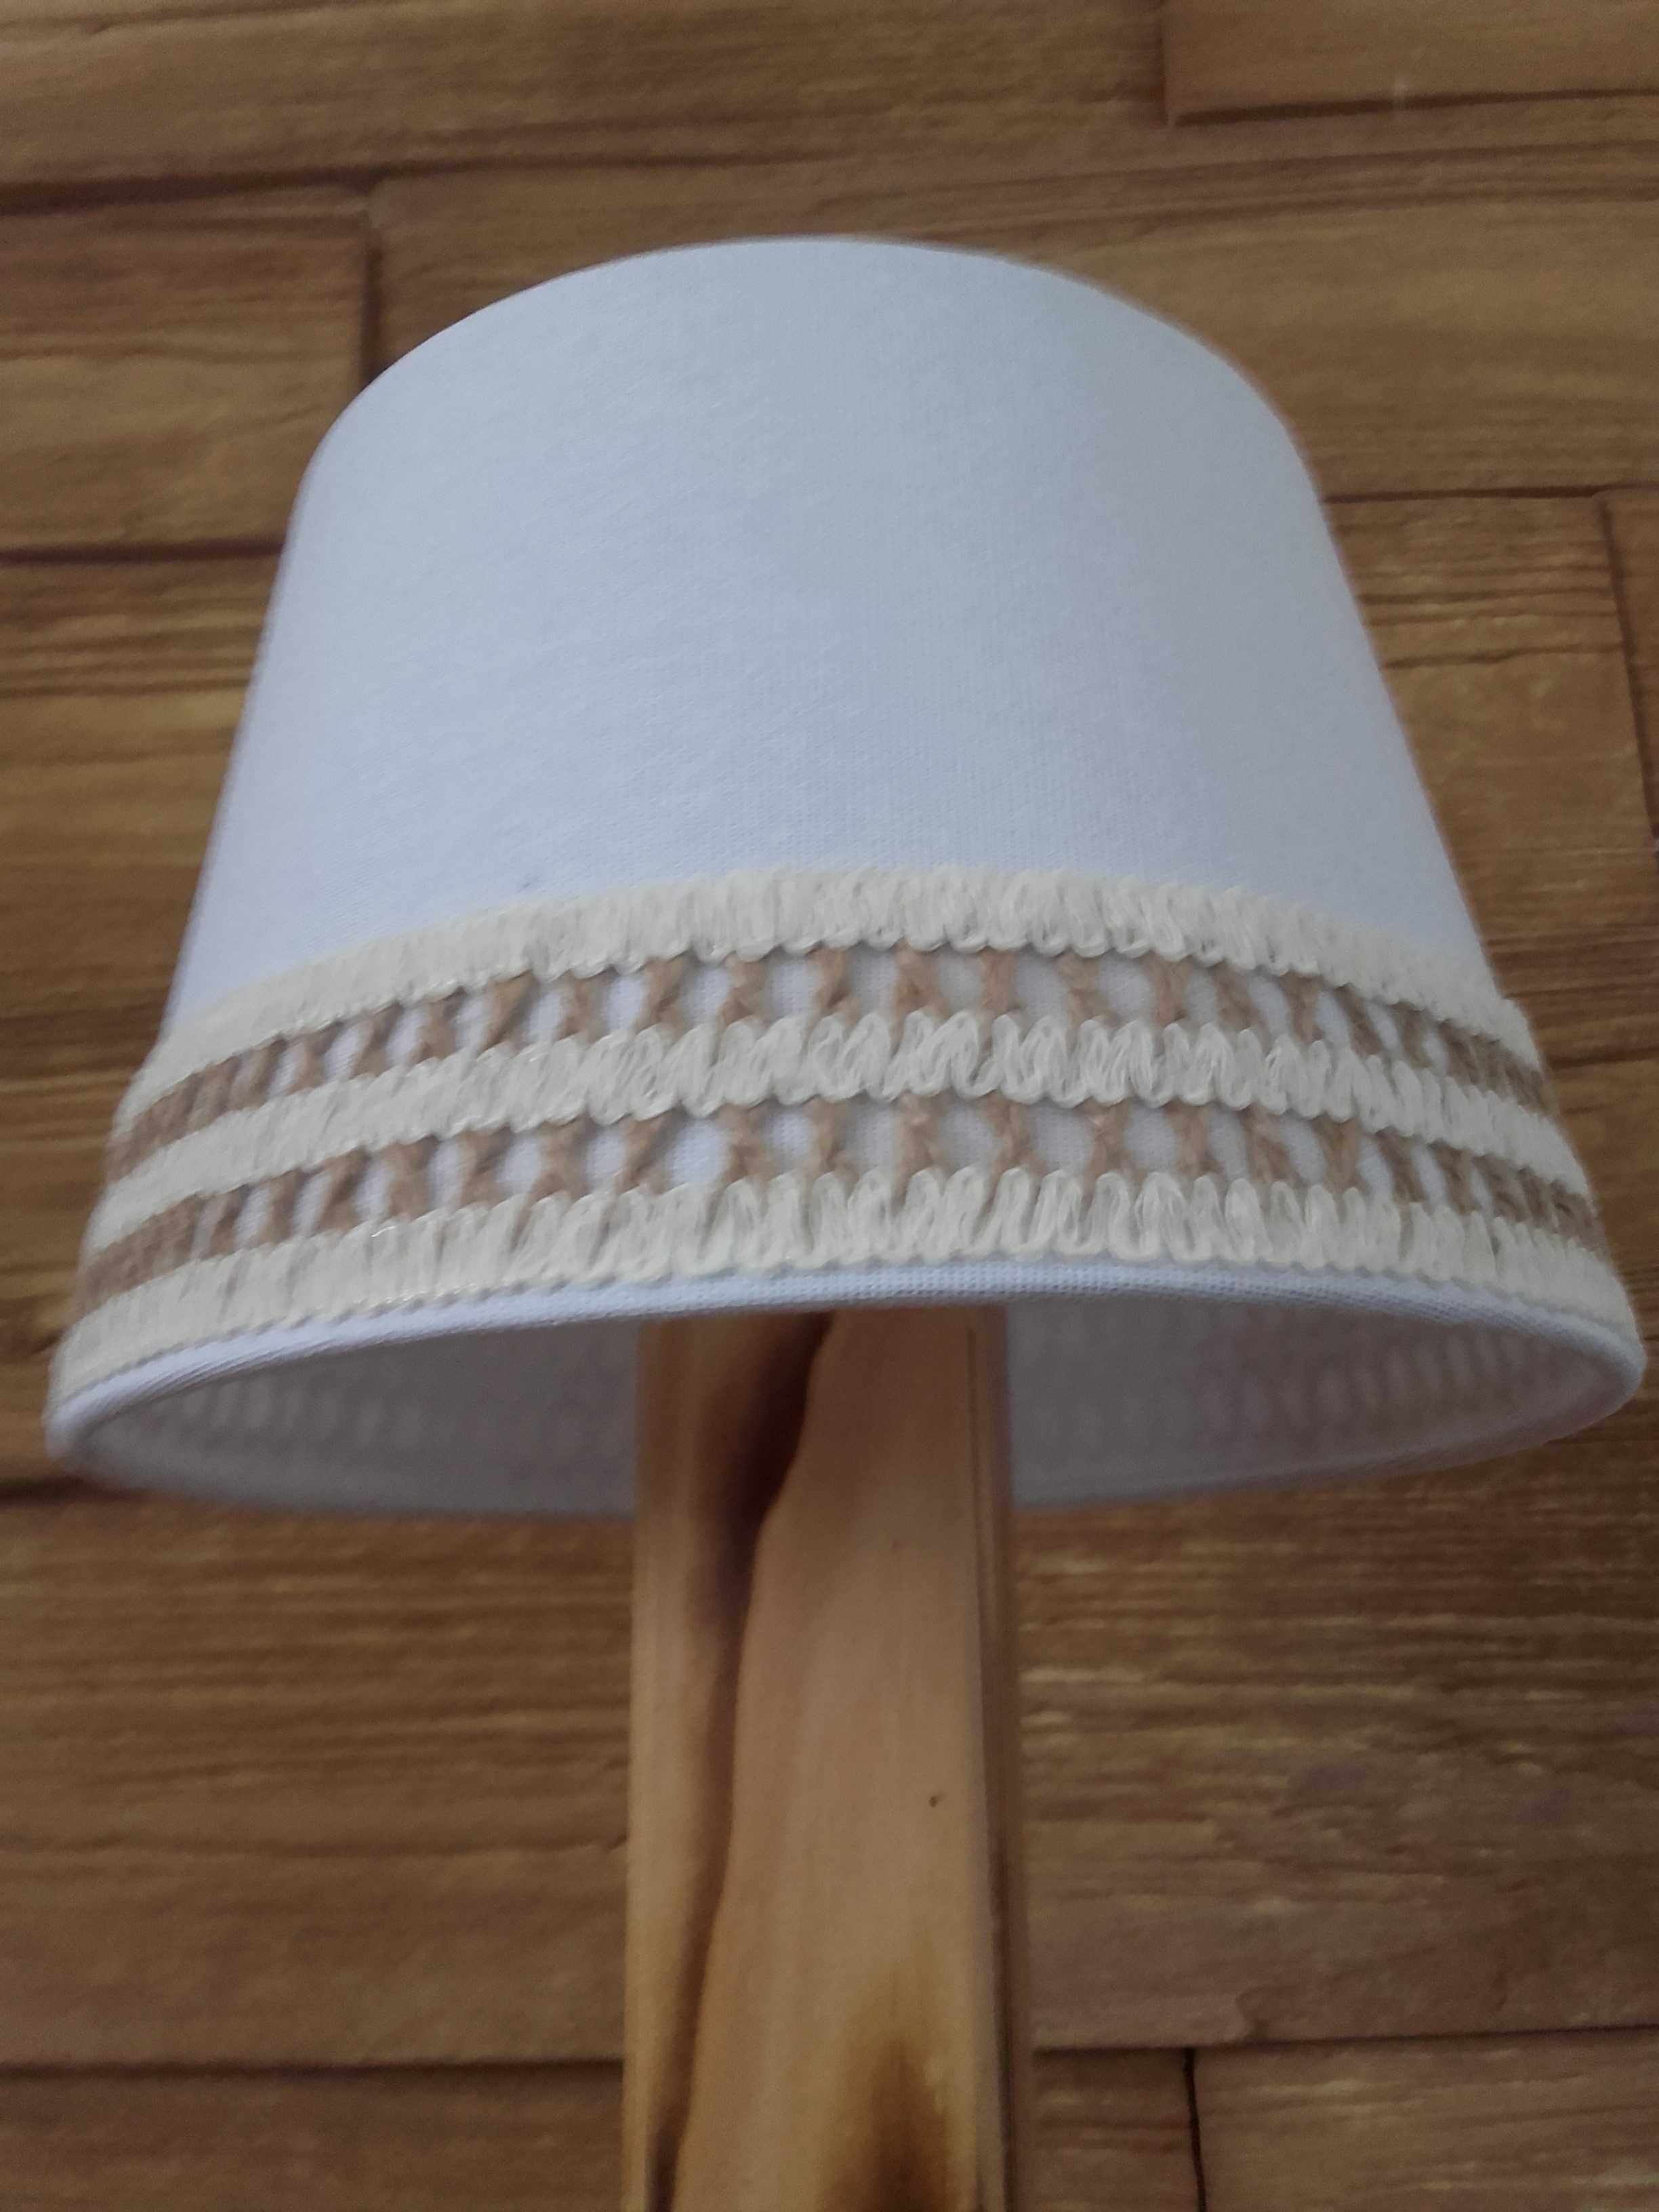 Lampka lampa nocna drewniana boho handmade